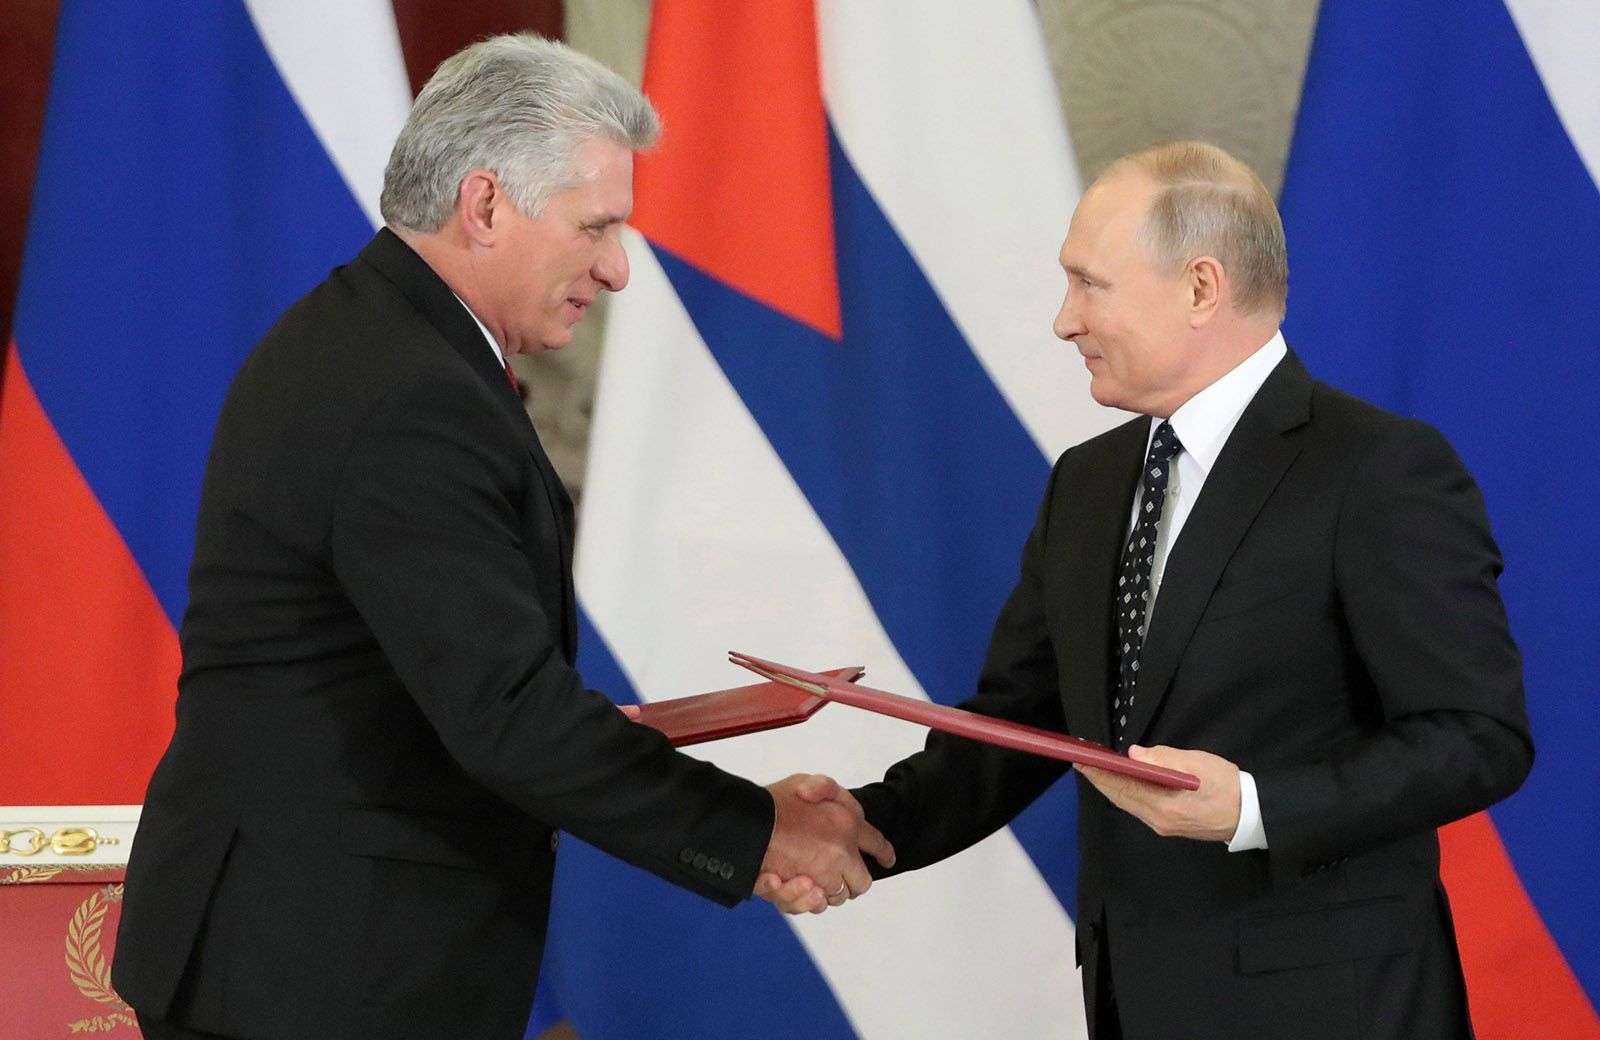 Díaz-Canel y Putin hablan por teléfono para "estrechar la cooperación estratégica", en medio de tensiones y rumores sobre la llegada de misiles y tropas rusas a Cuba